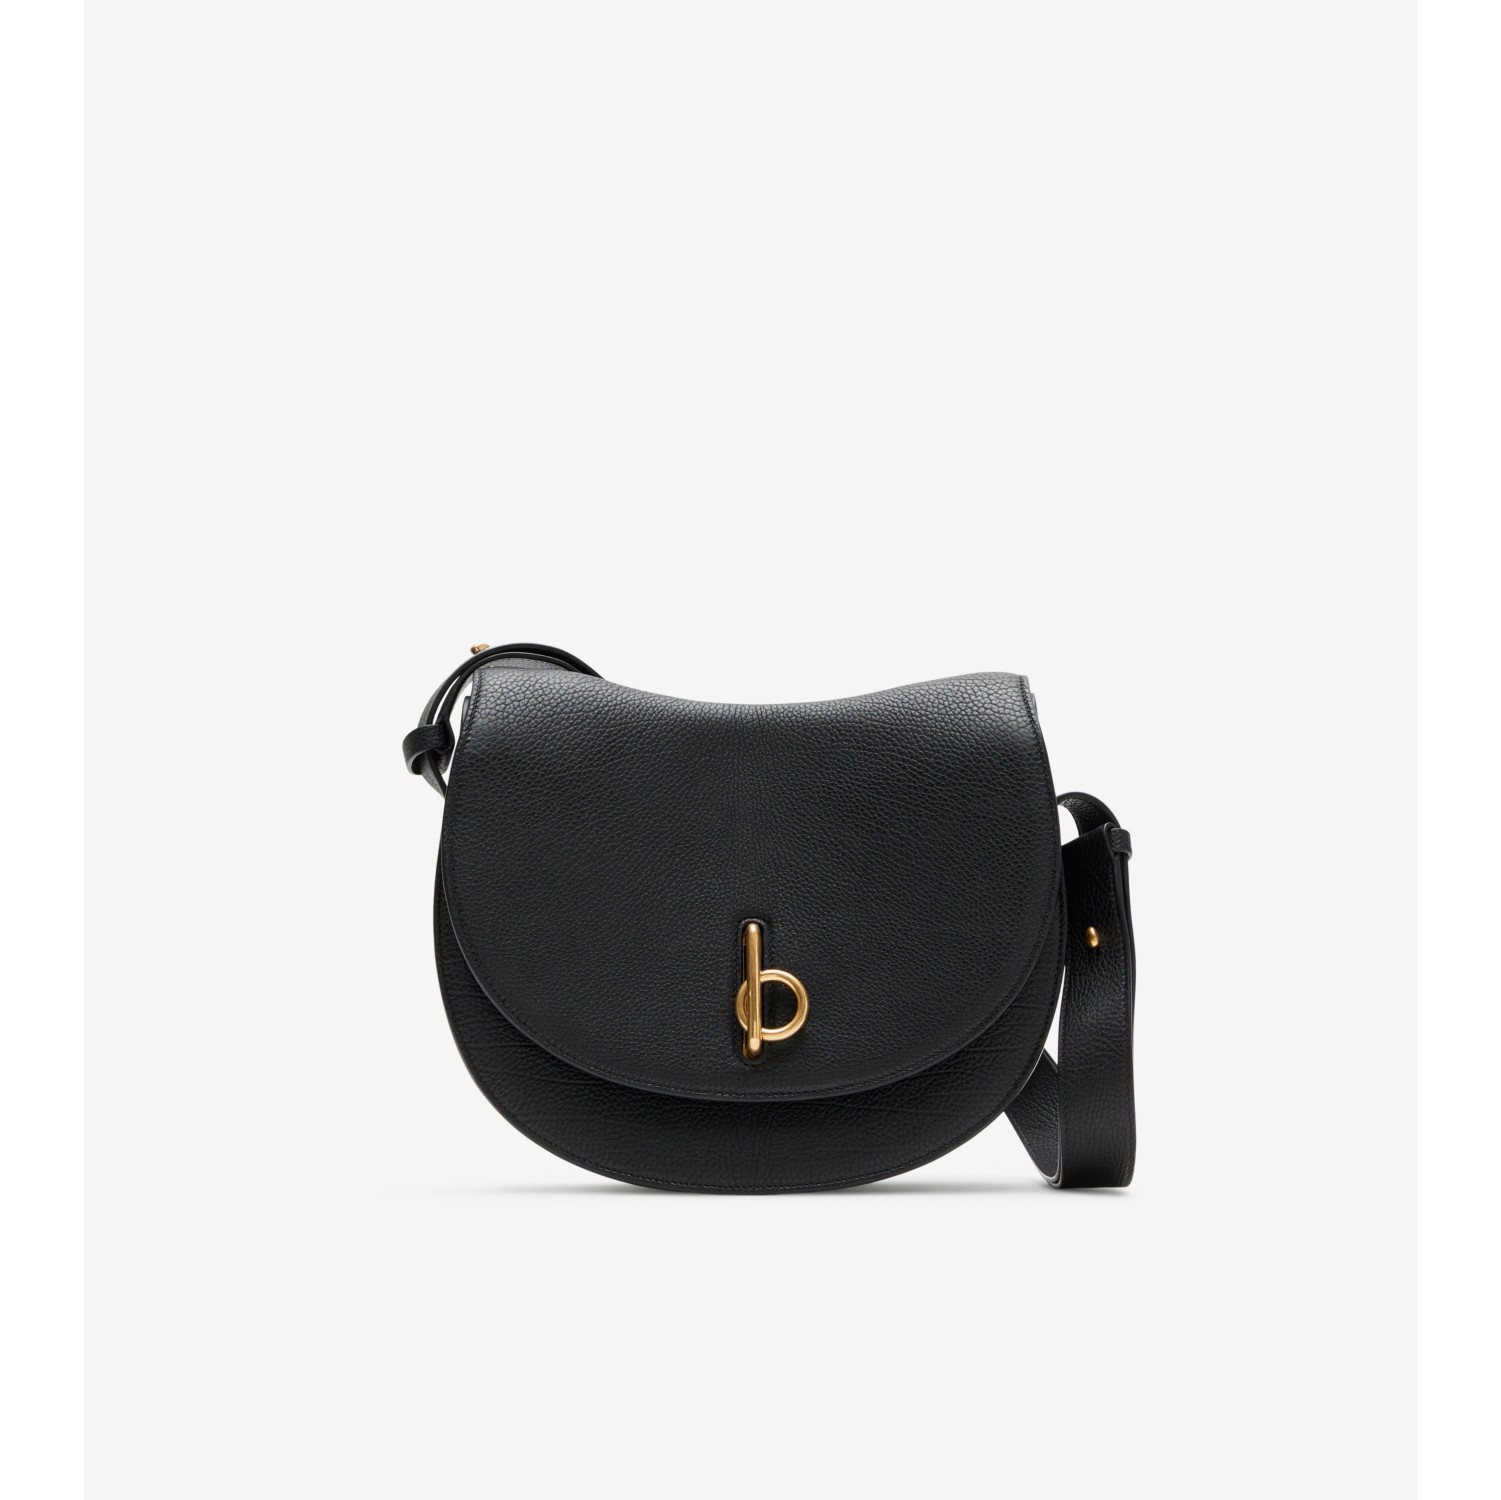 Black structured bag  Structured bag, Bags, Black